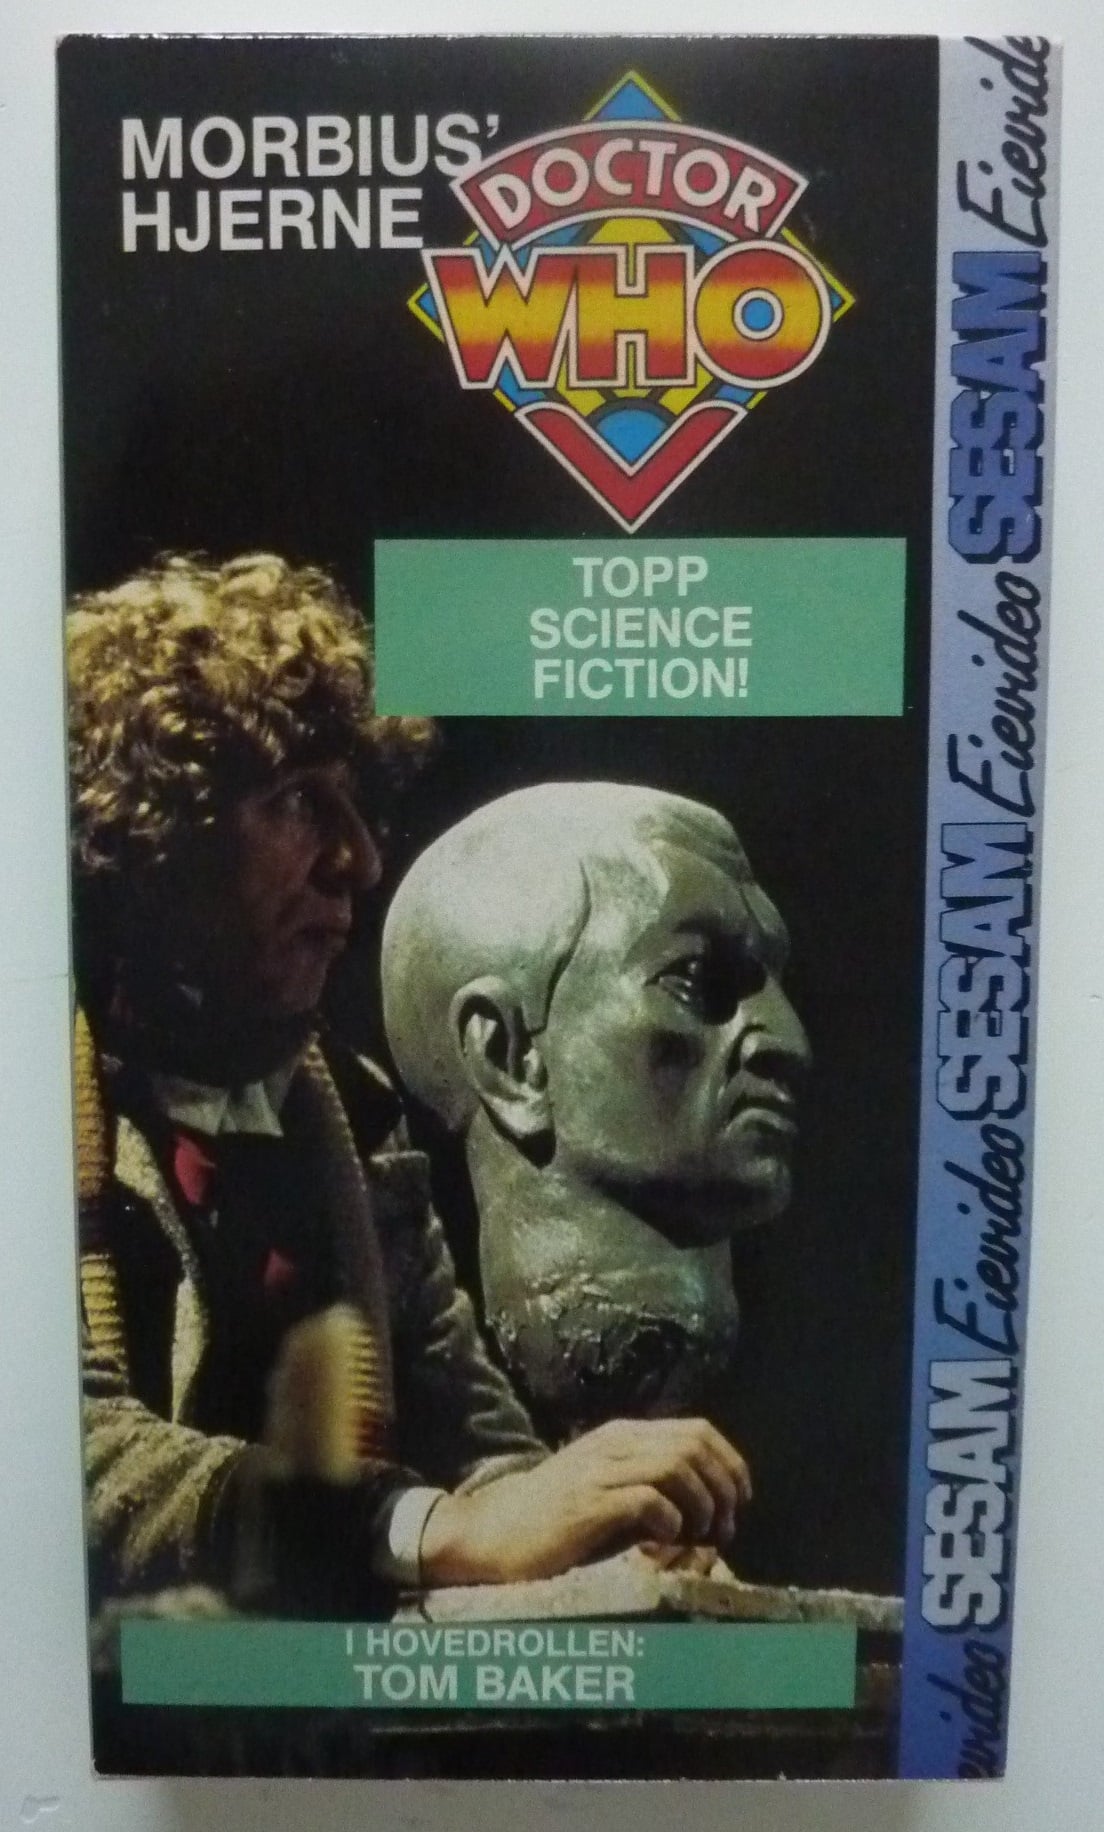 VHS Norwegian cover